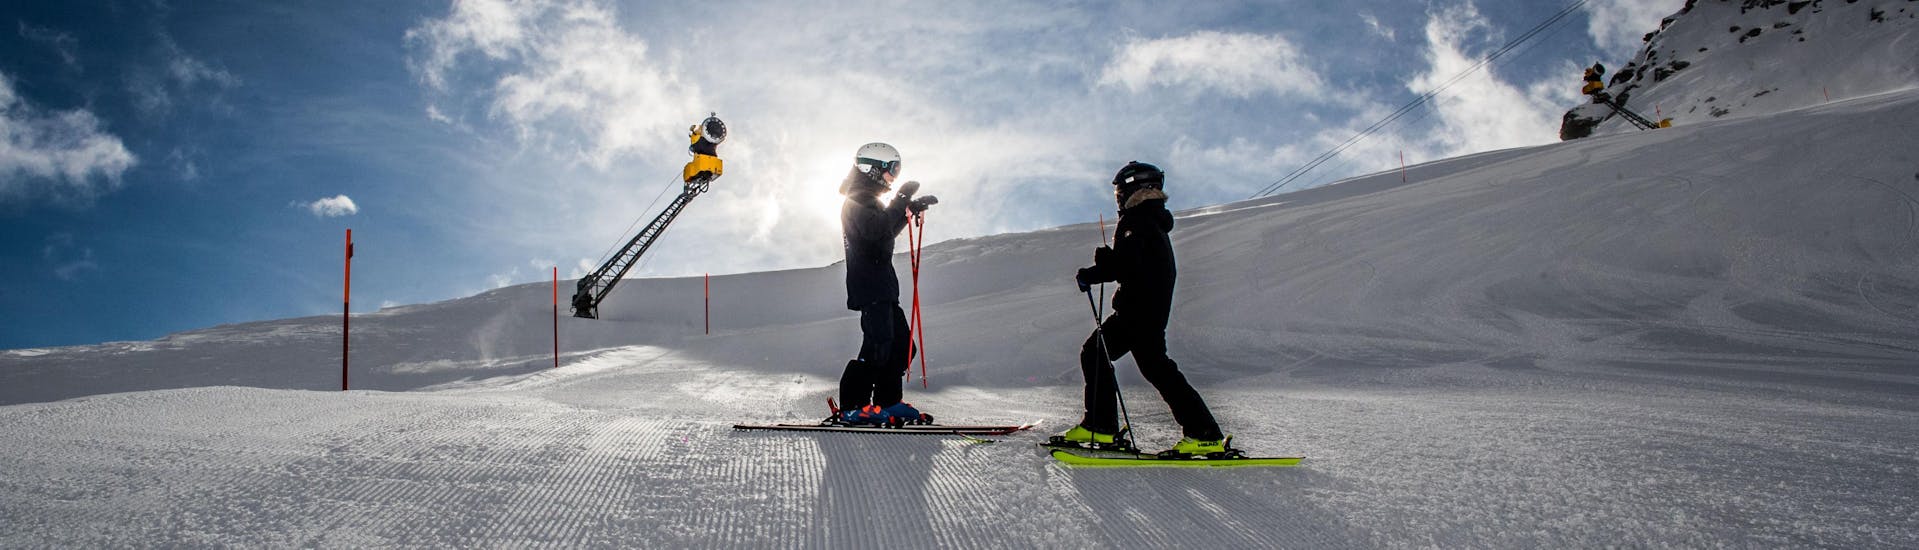 Mensen nemen deel aan privé skilessen voor kinderen voor experts bij Skischool Zenit in Saas-Fee.